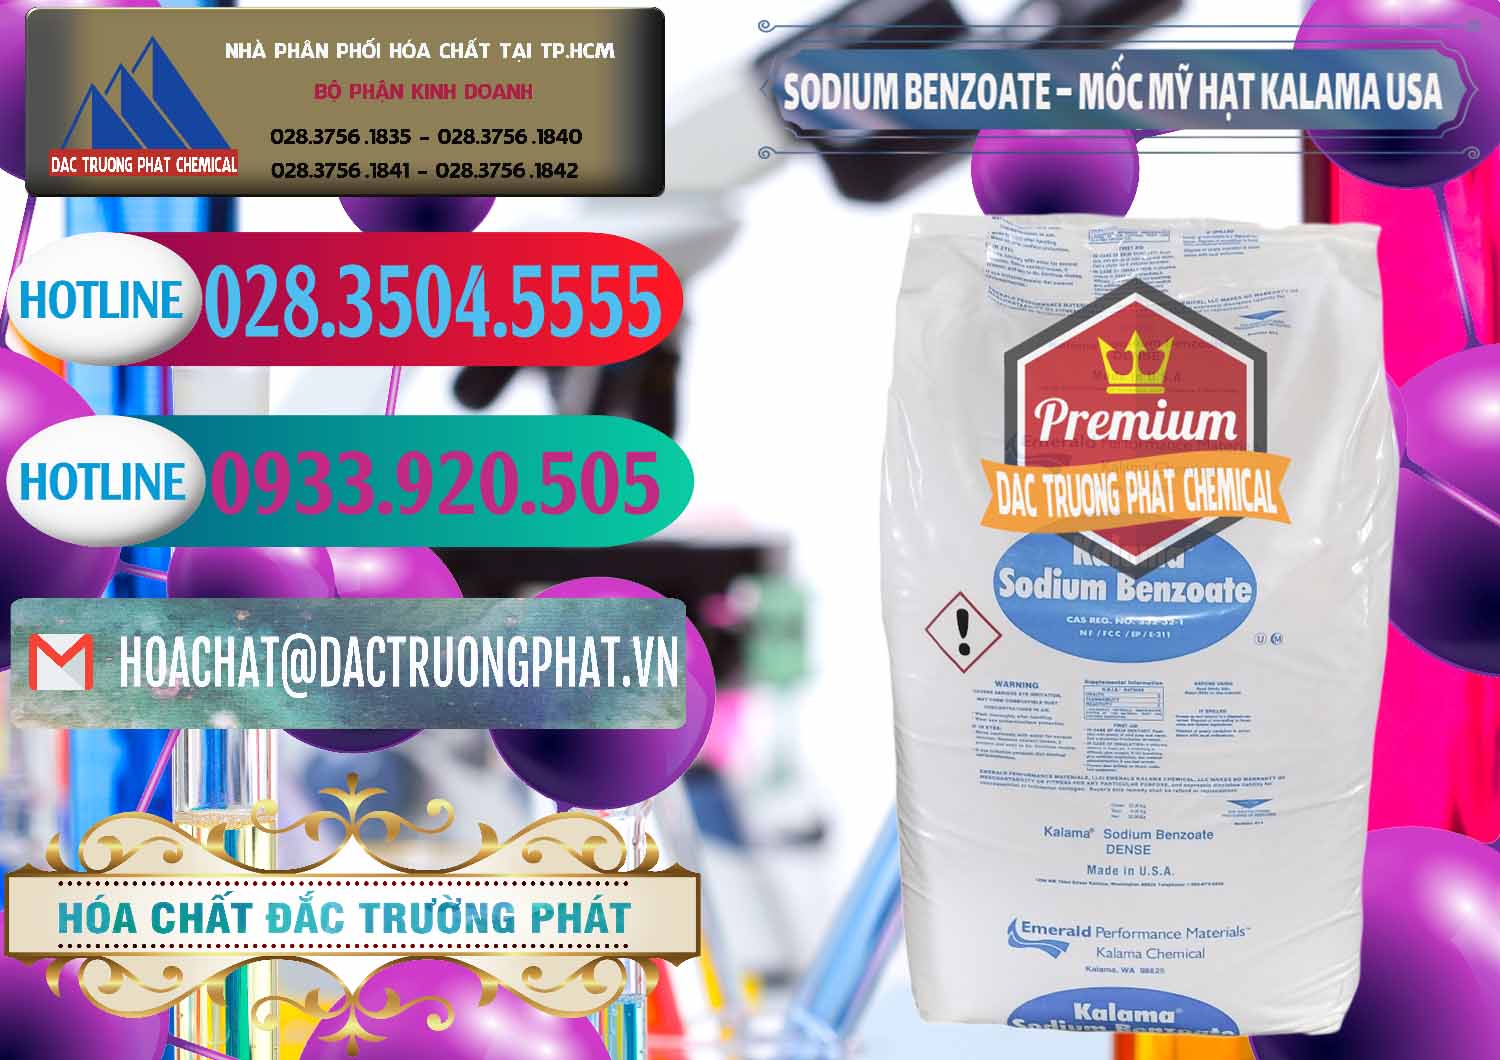 Chuyên bán ( cung ứng ) Sodium Benzoate - Mốc Hạt Kalama Food Grade Mỹ Usa - 0137 - Đơn vị kinh doanh & phân phối hóa chất tại TP.HCM - truongphat.vn